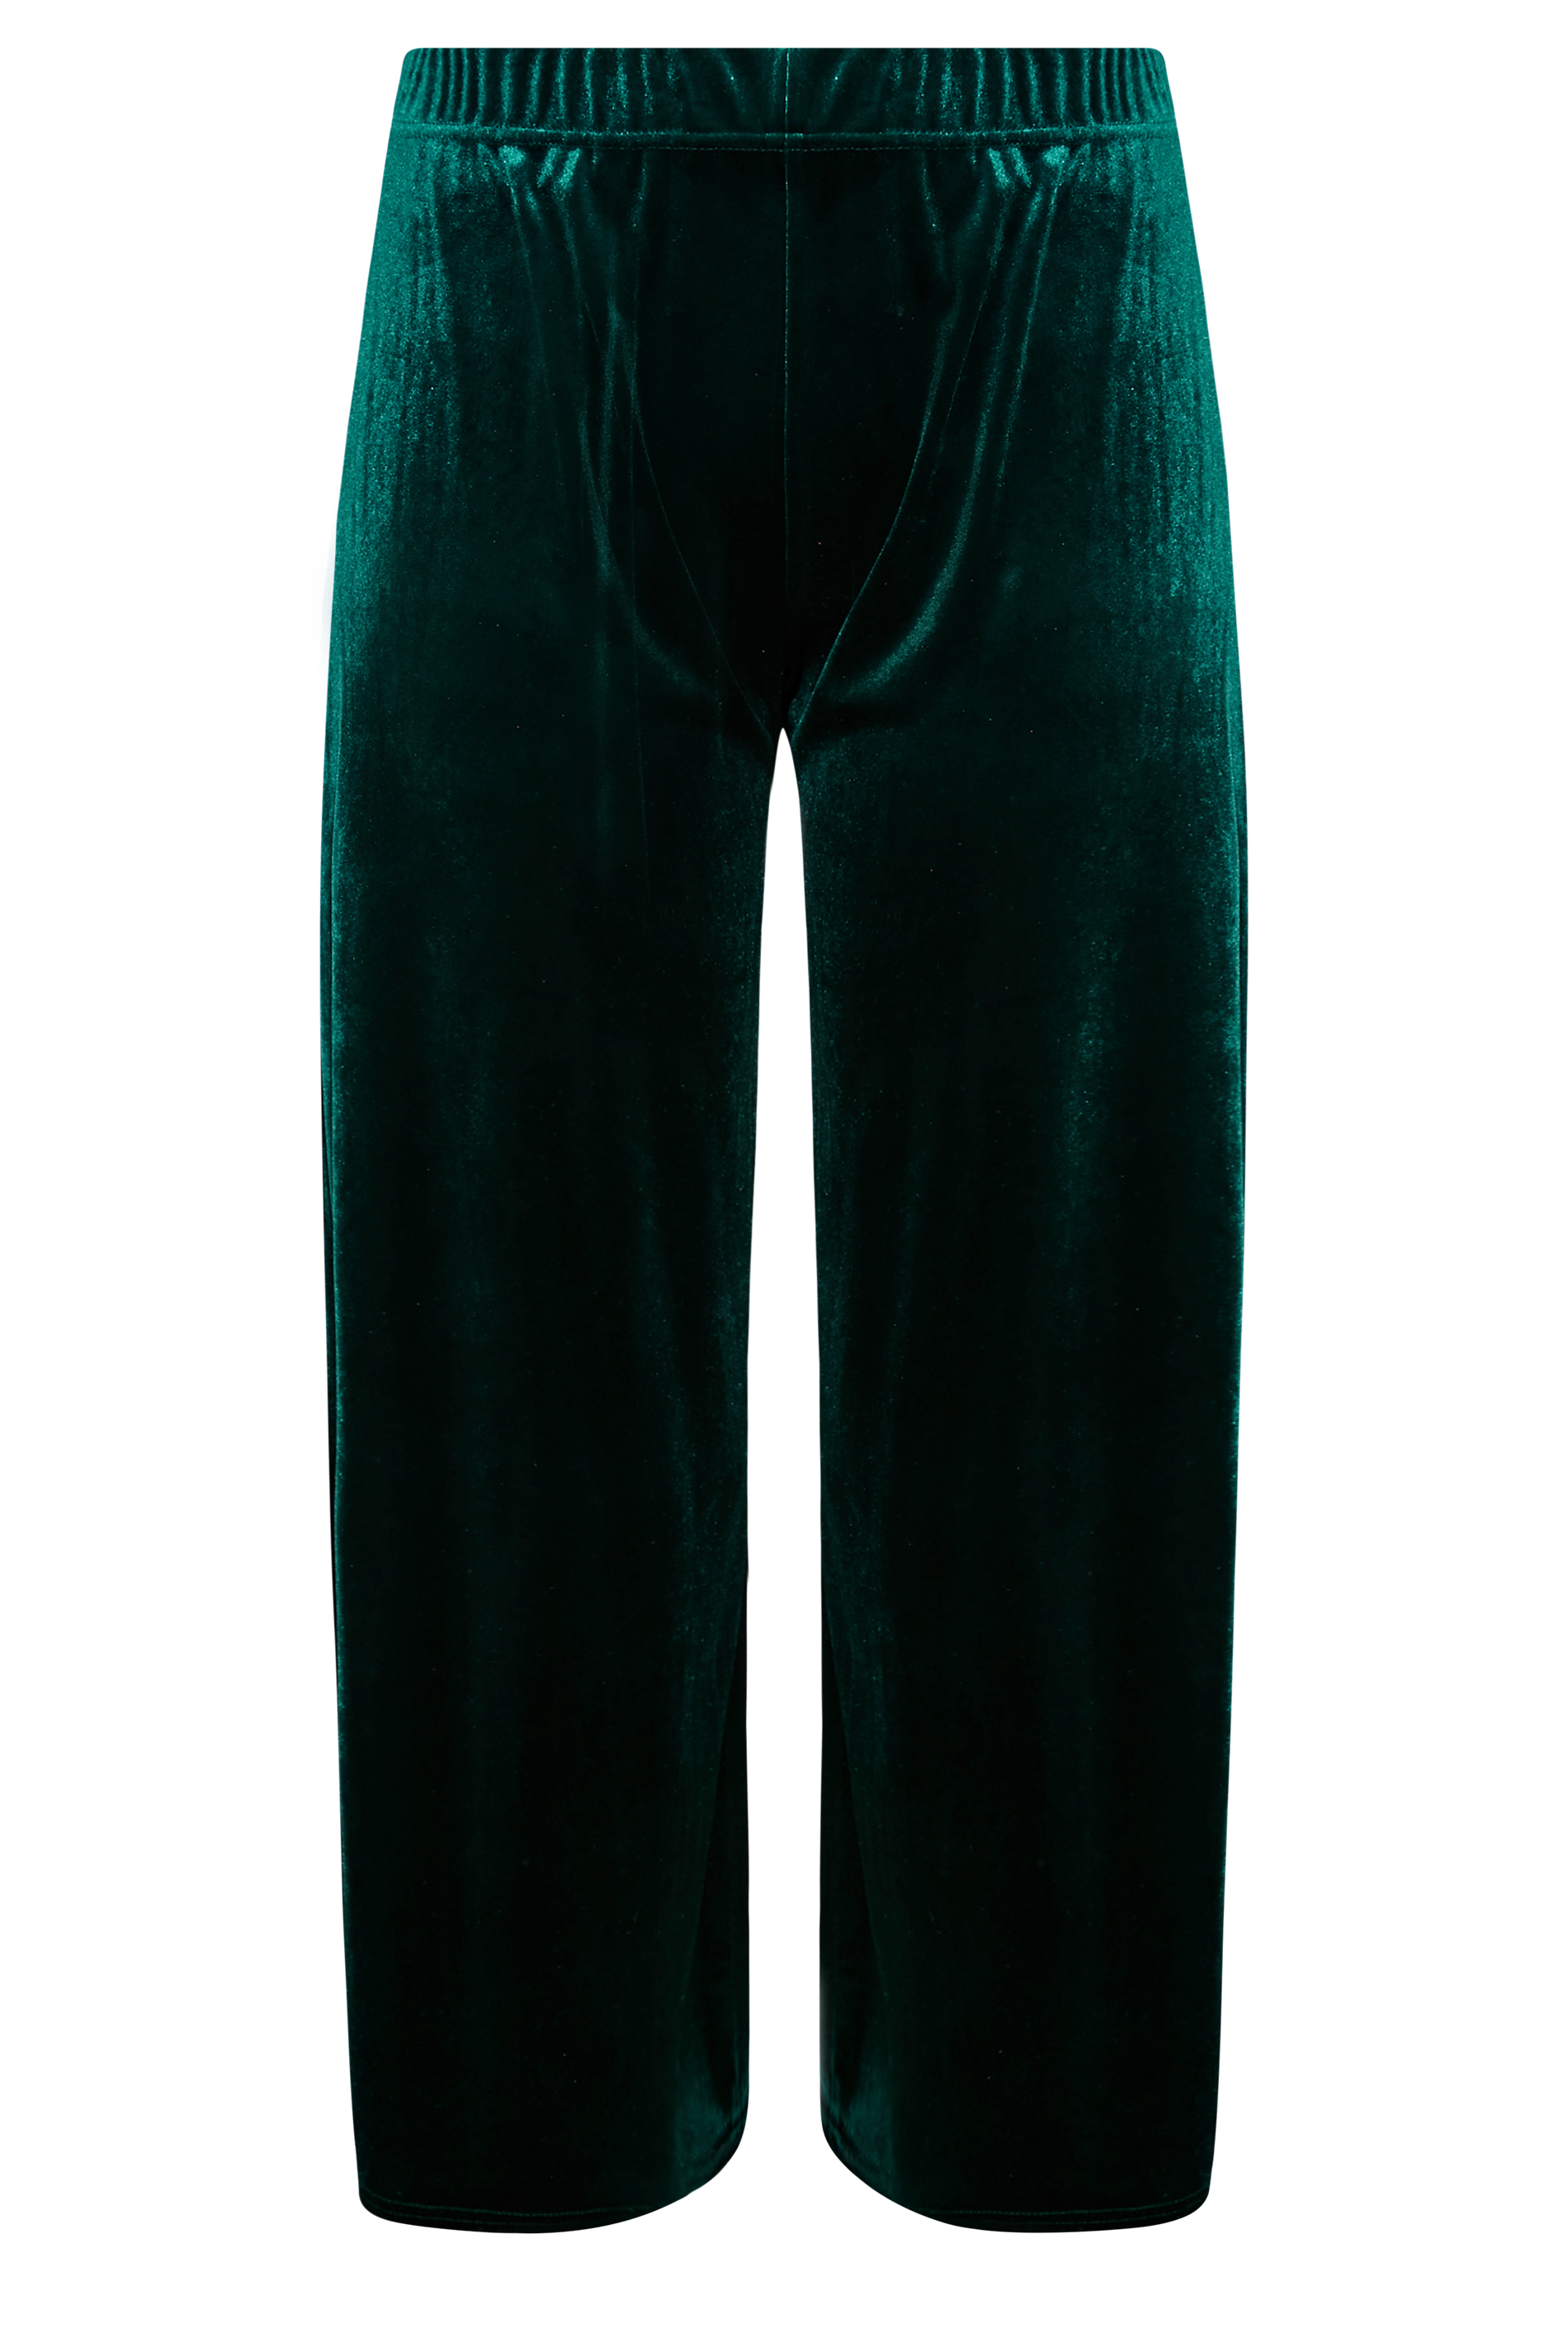 Şans Women's Large Size Cinnamon Waist Elastic and Epaulette Detailed Satin  Trousers 65n27004 - Trendyol